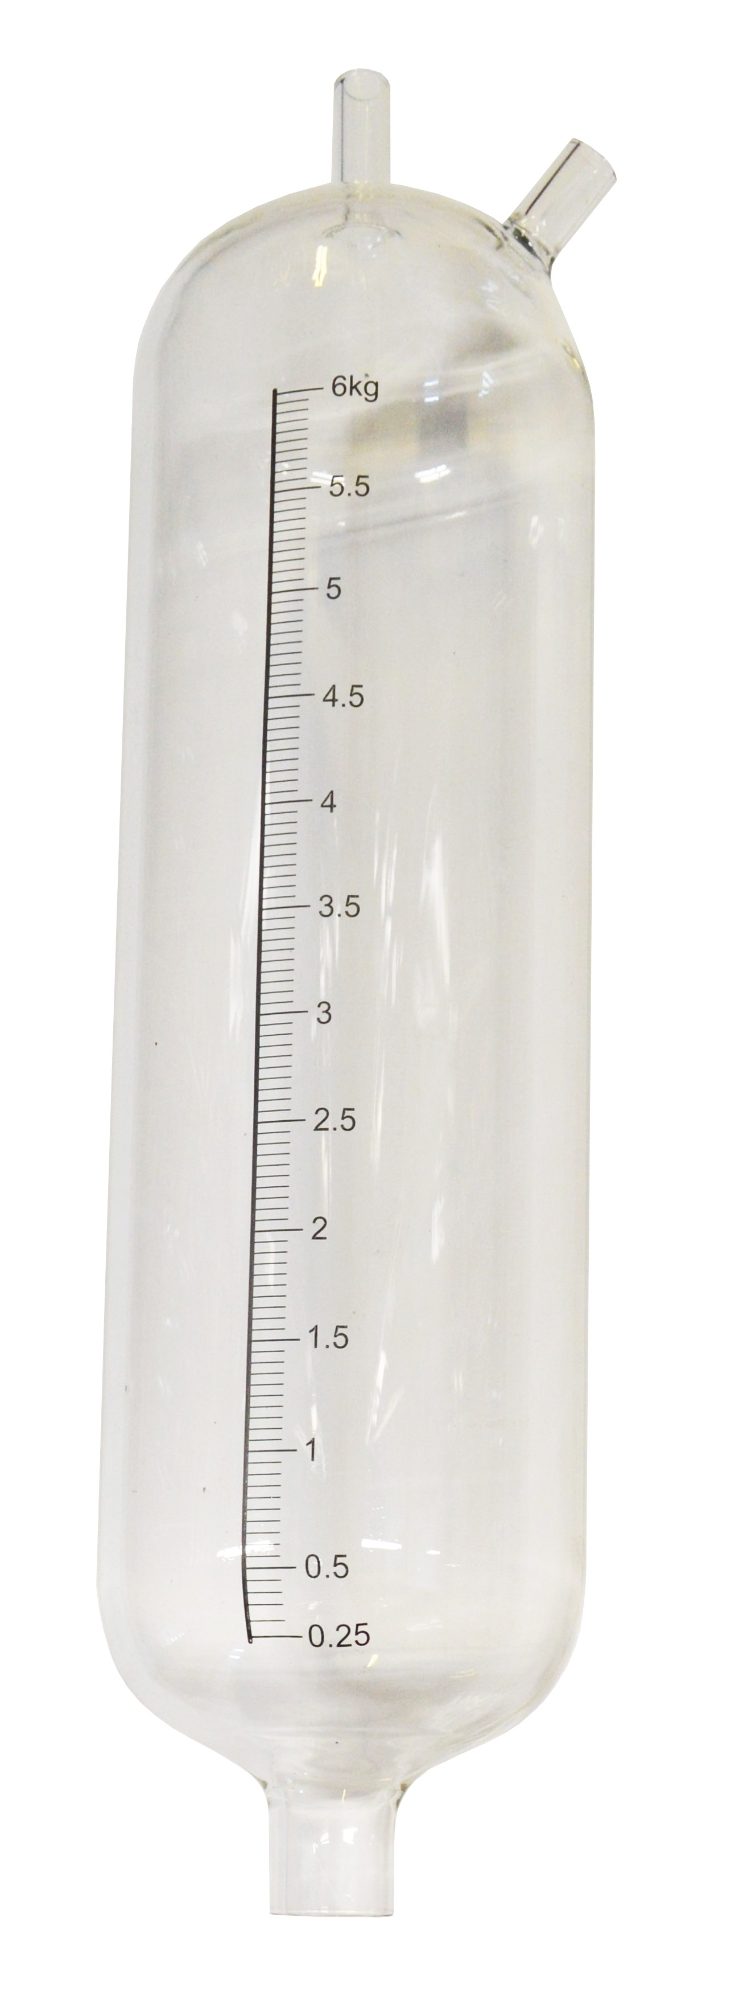 MS Glasbehälter 6kg (Schaf/Ziege)